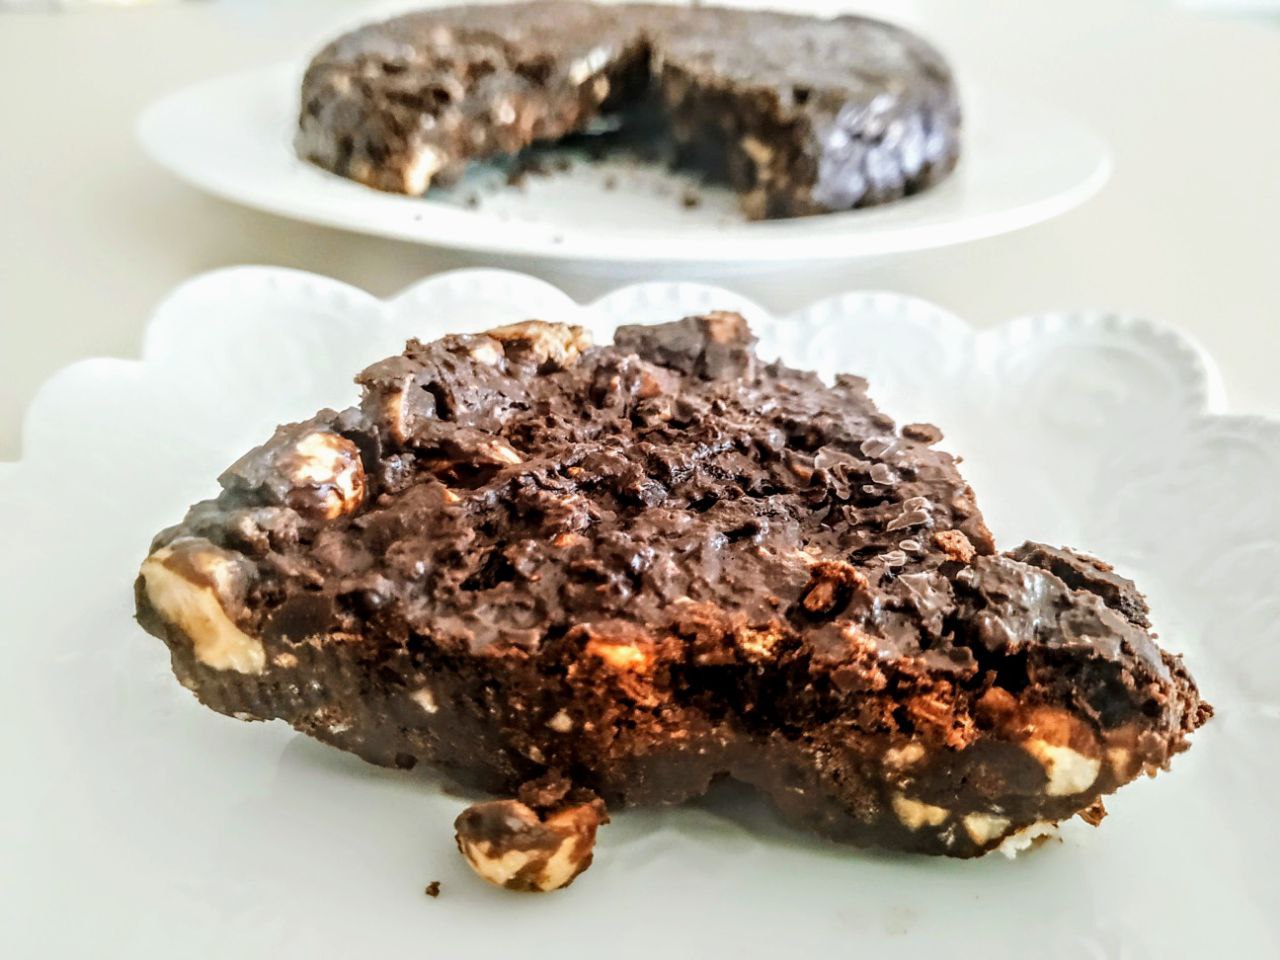 Dolci facili e veloci senza cottura: torta fredda di biscotti cioccolato fondente e nocciole con caffè!